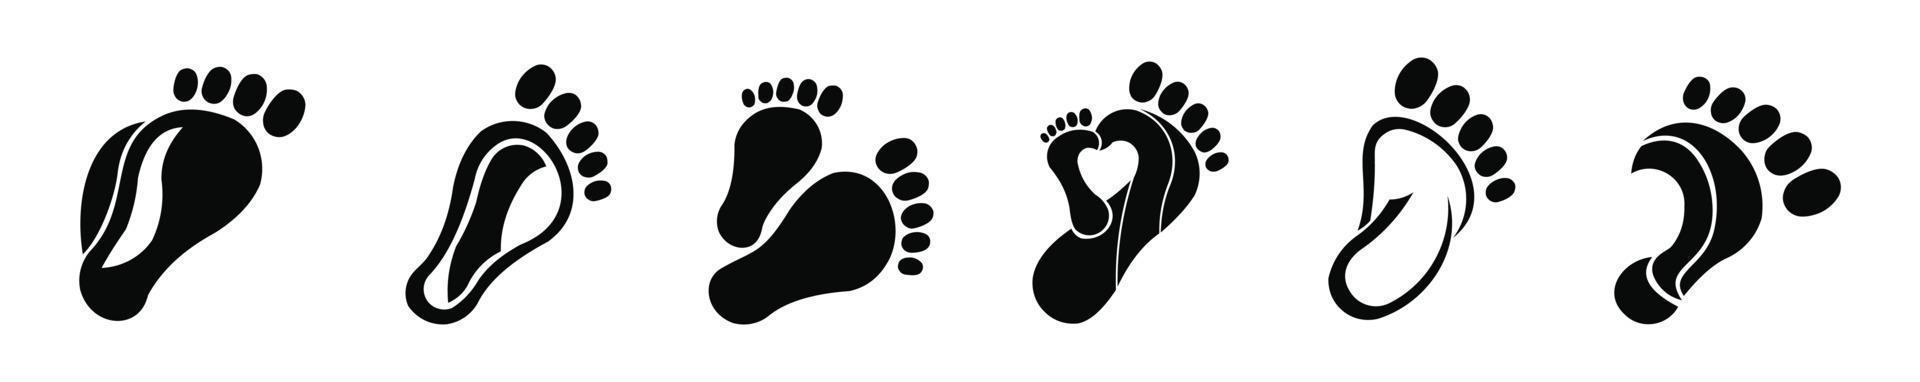 ilustración de contorno de suelas de pie izquierdo y derecho para biomecánica, calzado, contorno de estilo de dibujos animados realista. pie de logotipo de inspiración vectorial vector